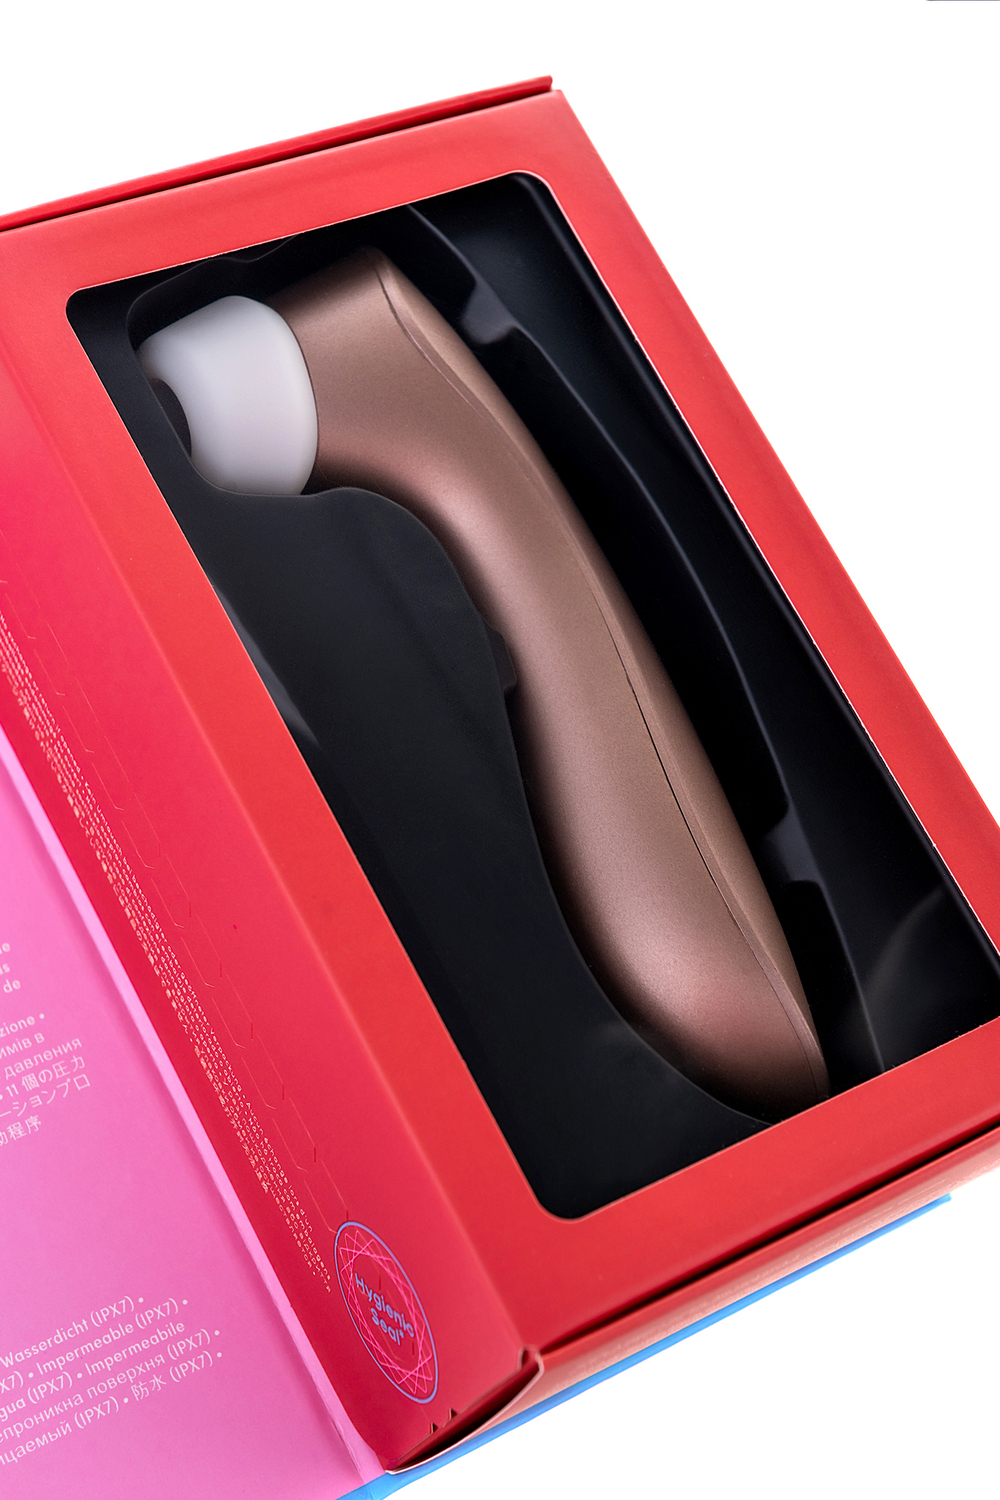 Вакуум-волновой бесконтактный стимулятор клитора Satisfyer PRO 2 Vibration, силикон, розовый, 15 см.